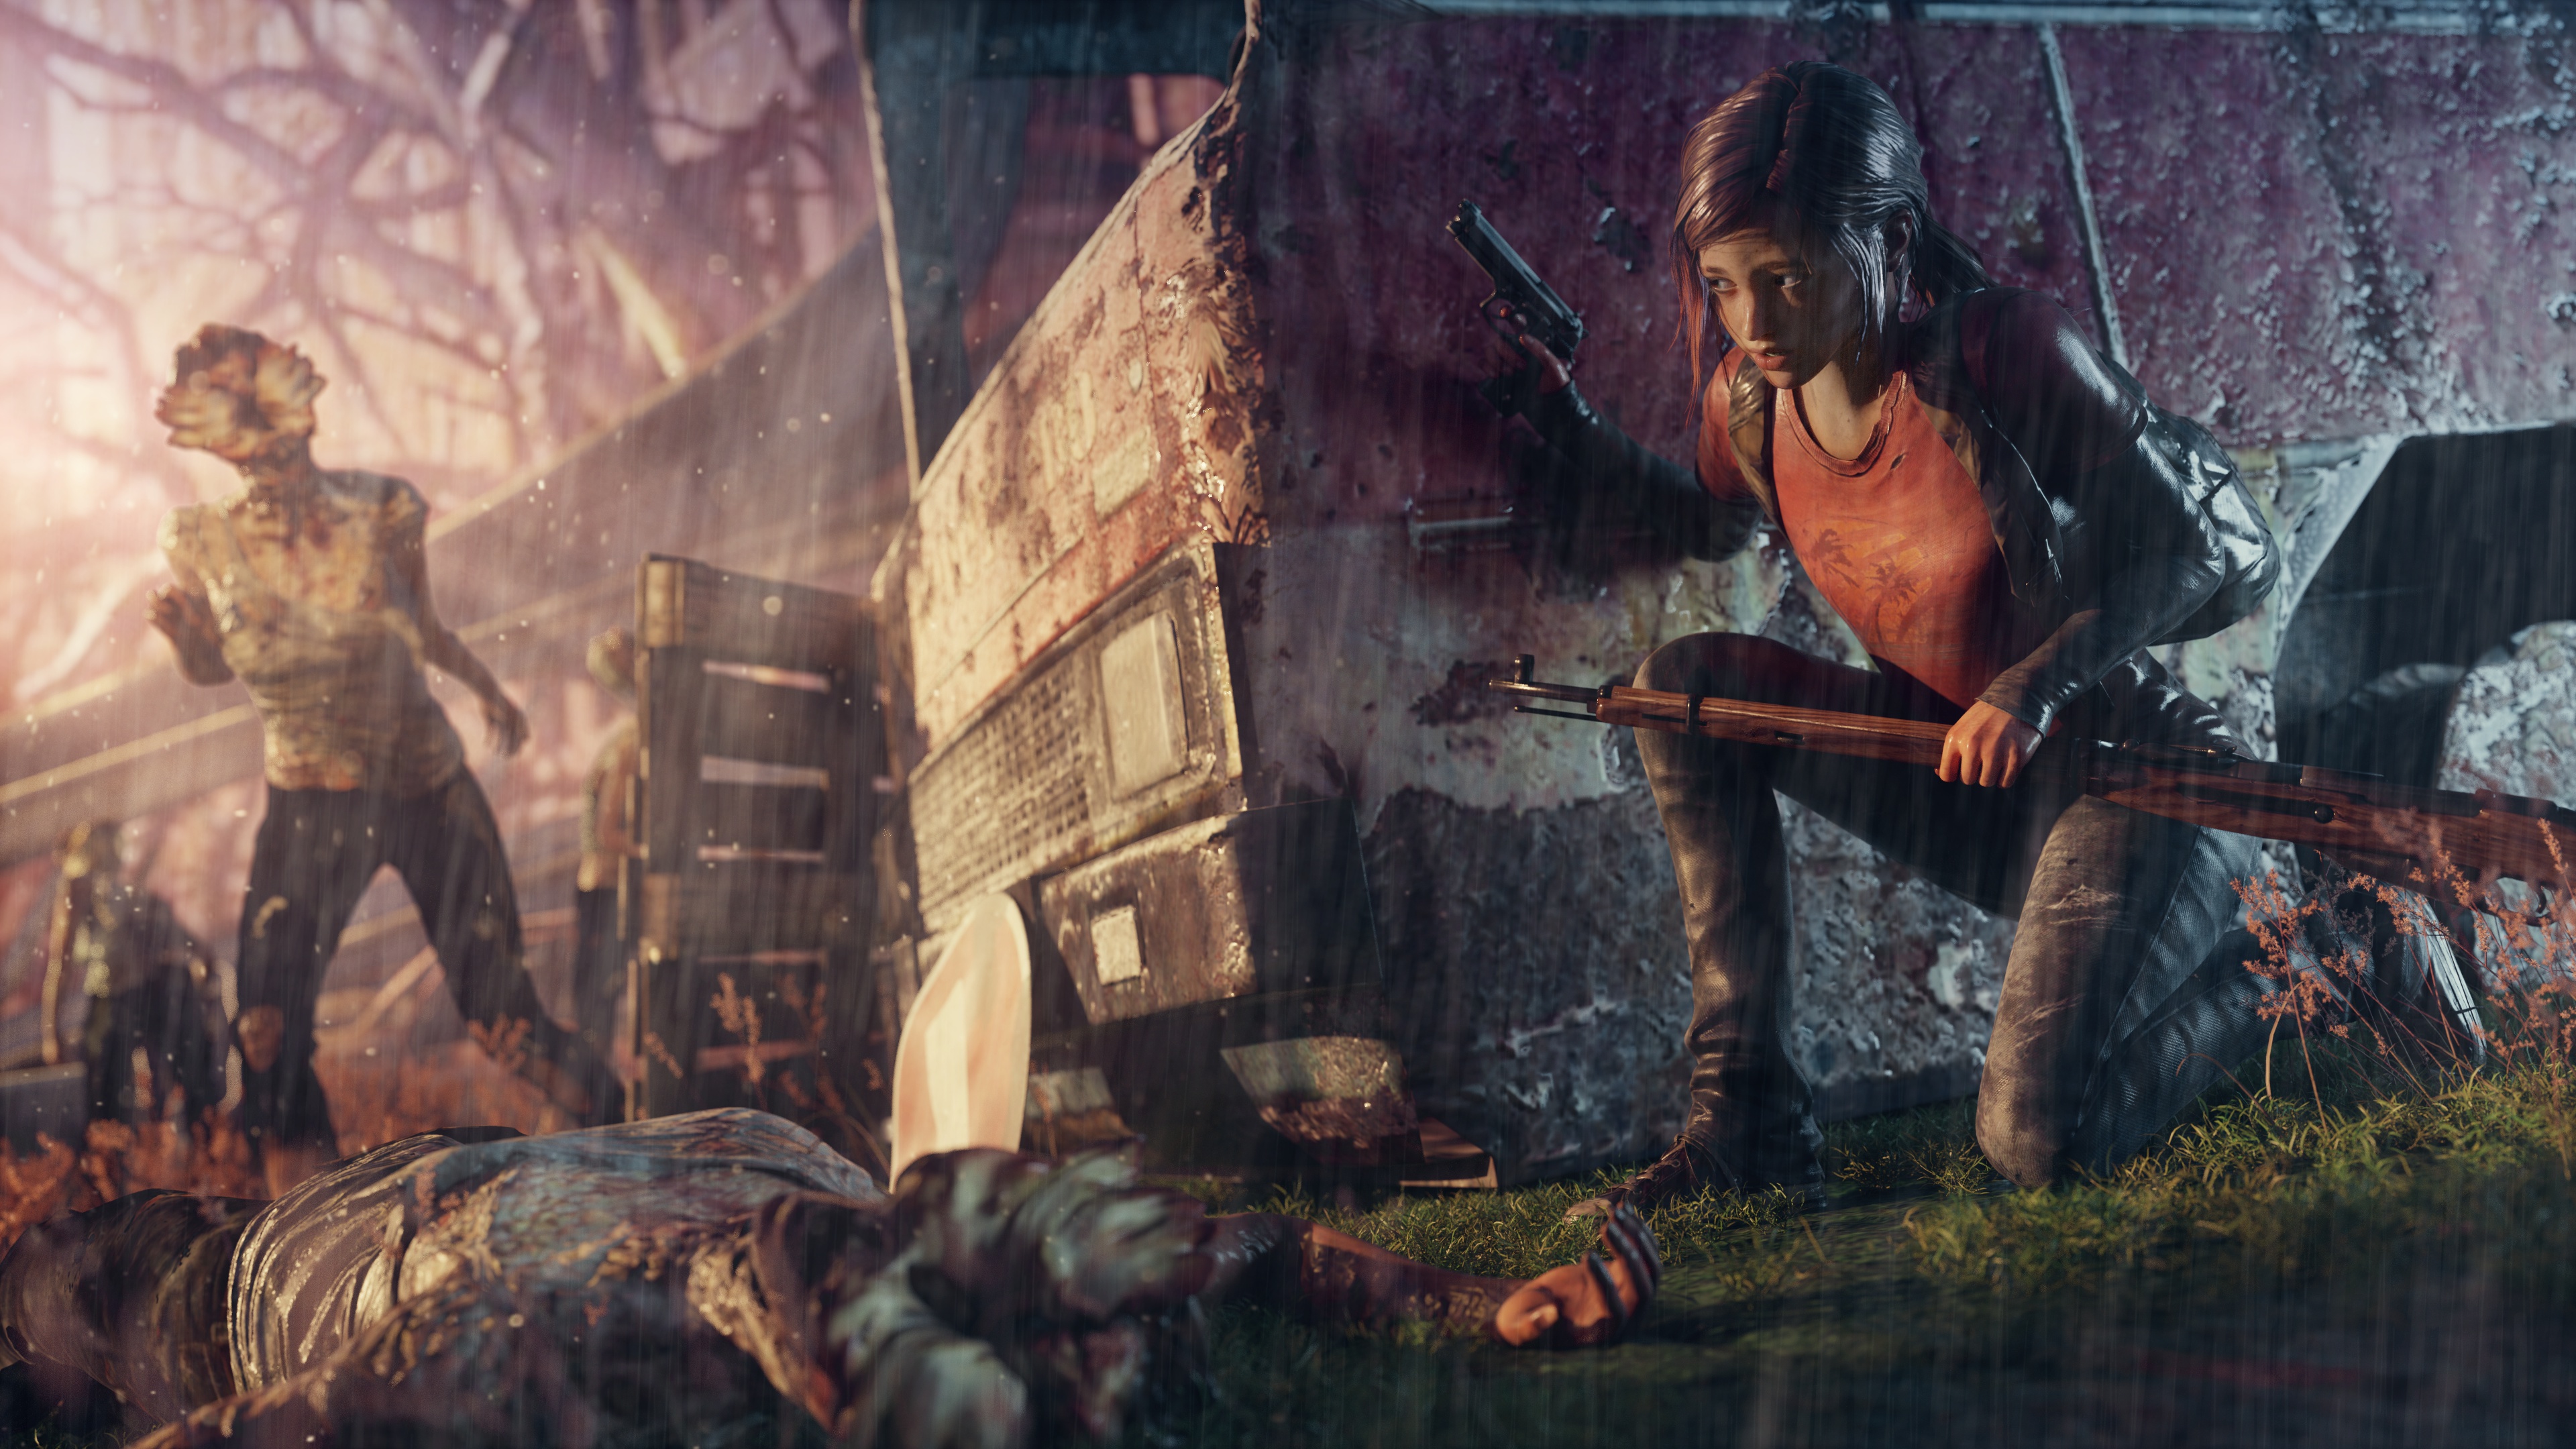 Ellie (The Last of Us) 4k Ultra HD Wallpaper